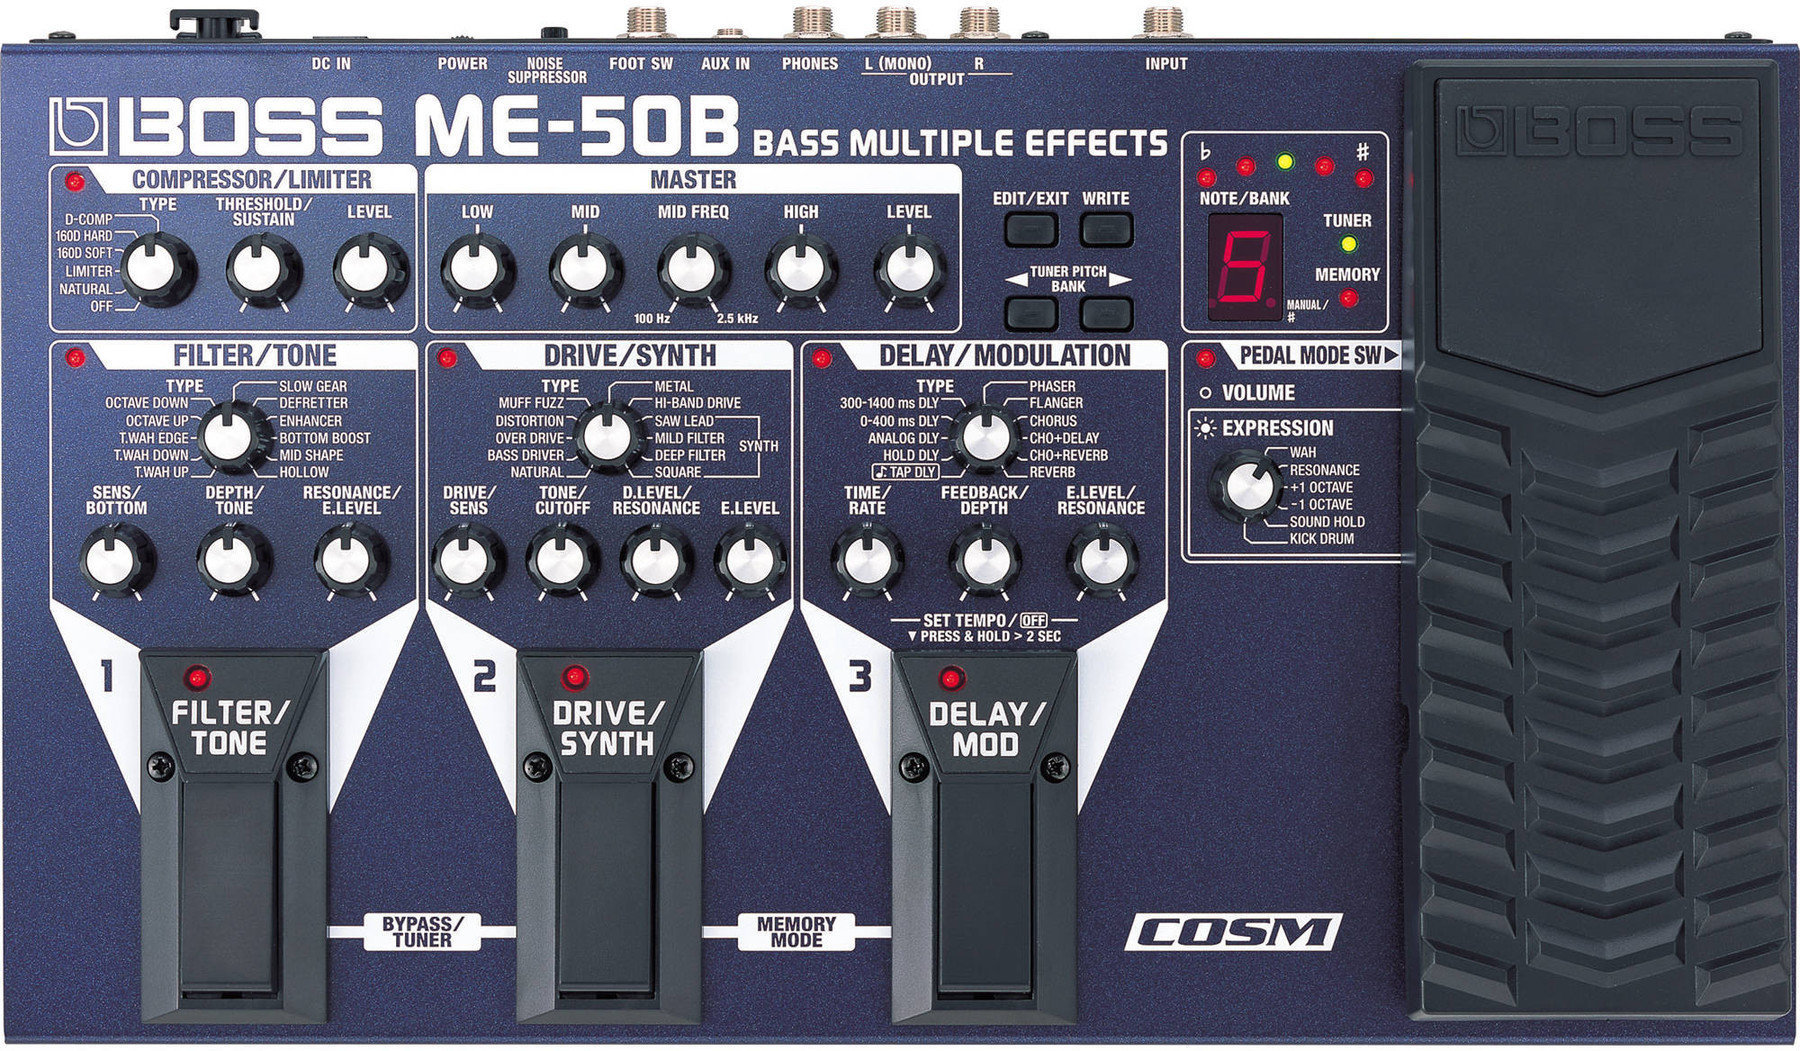 Bassguitar Multi-Effect Boss ME-50B Bass Multiple Effects